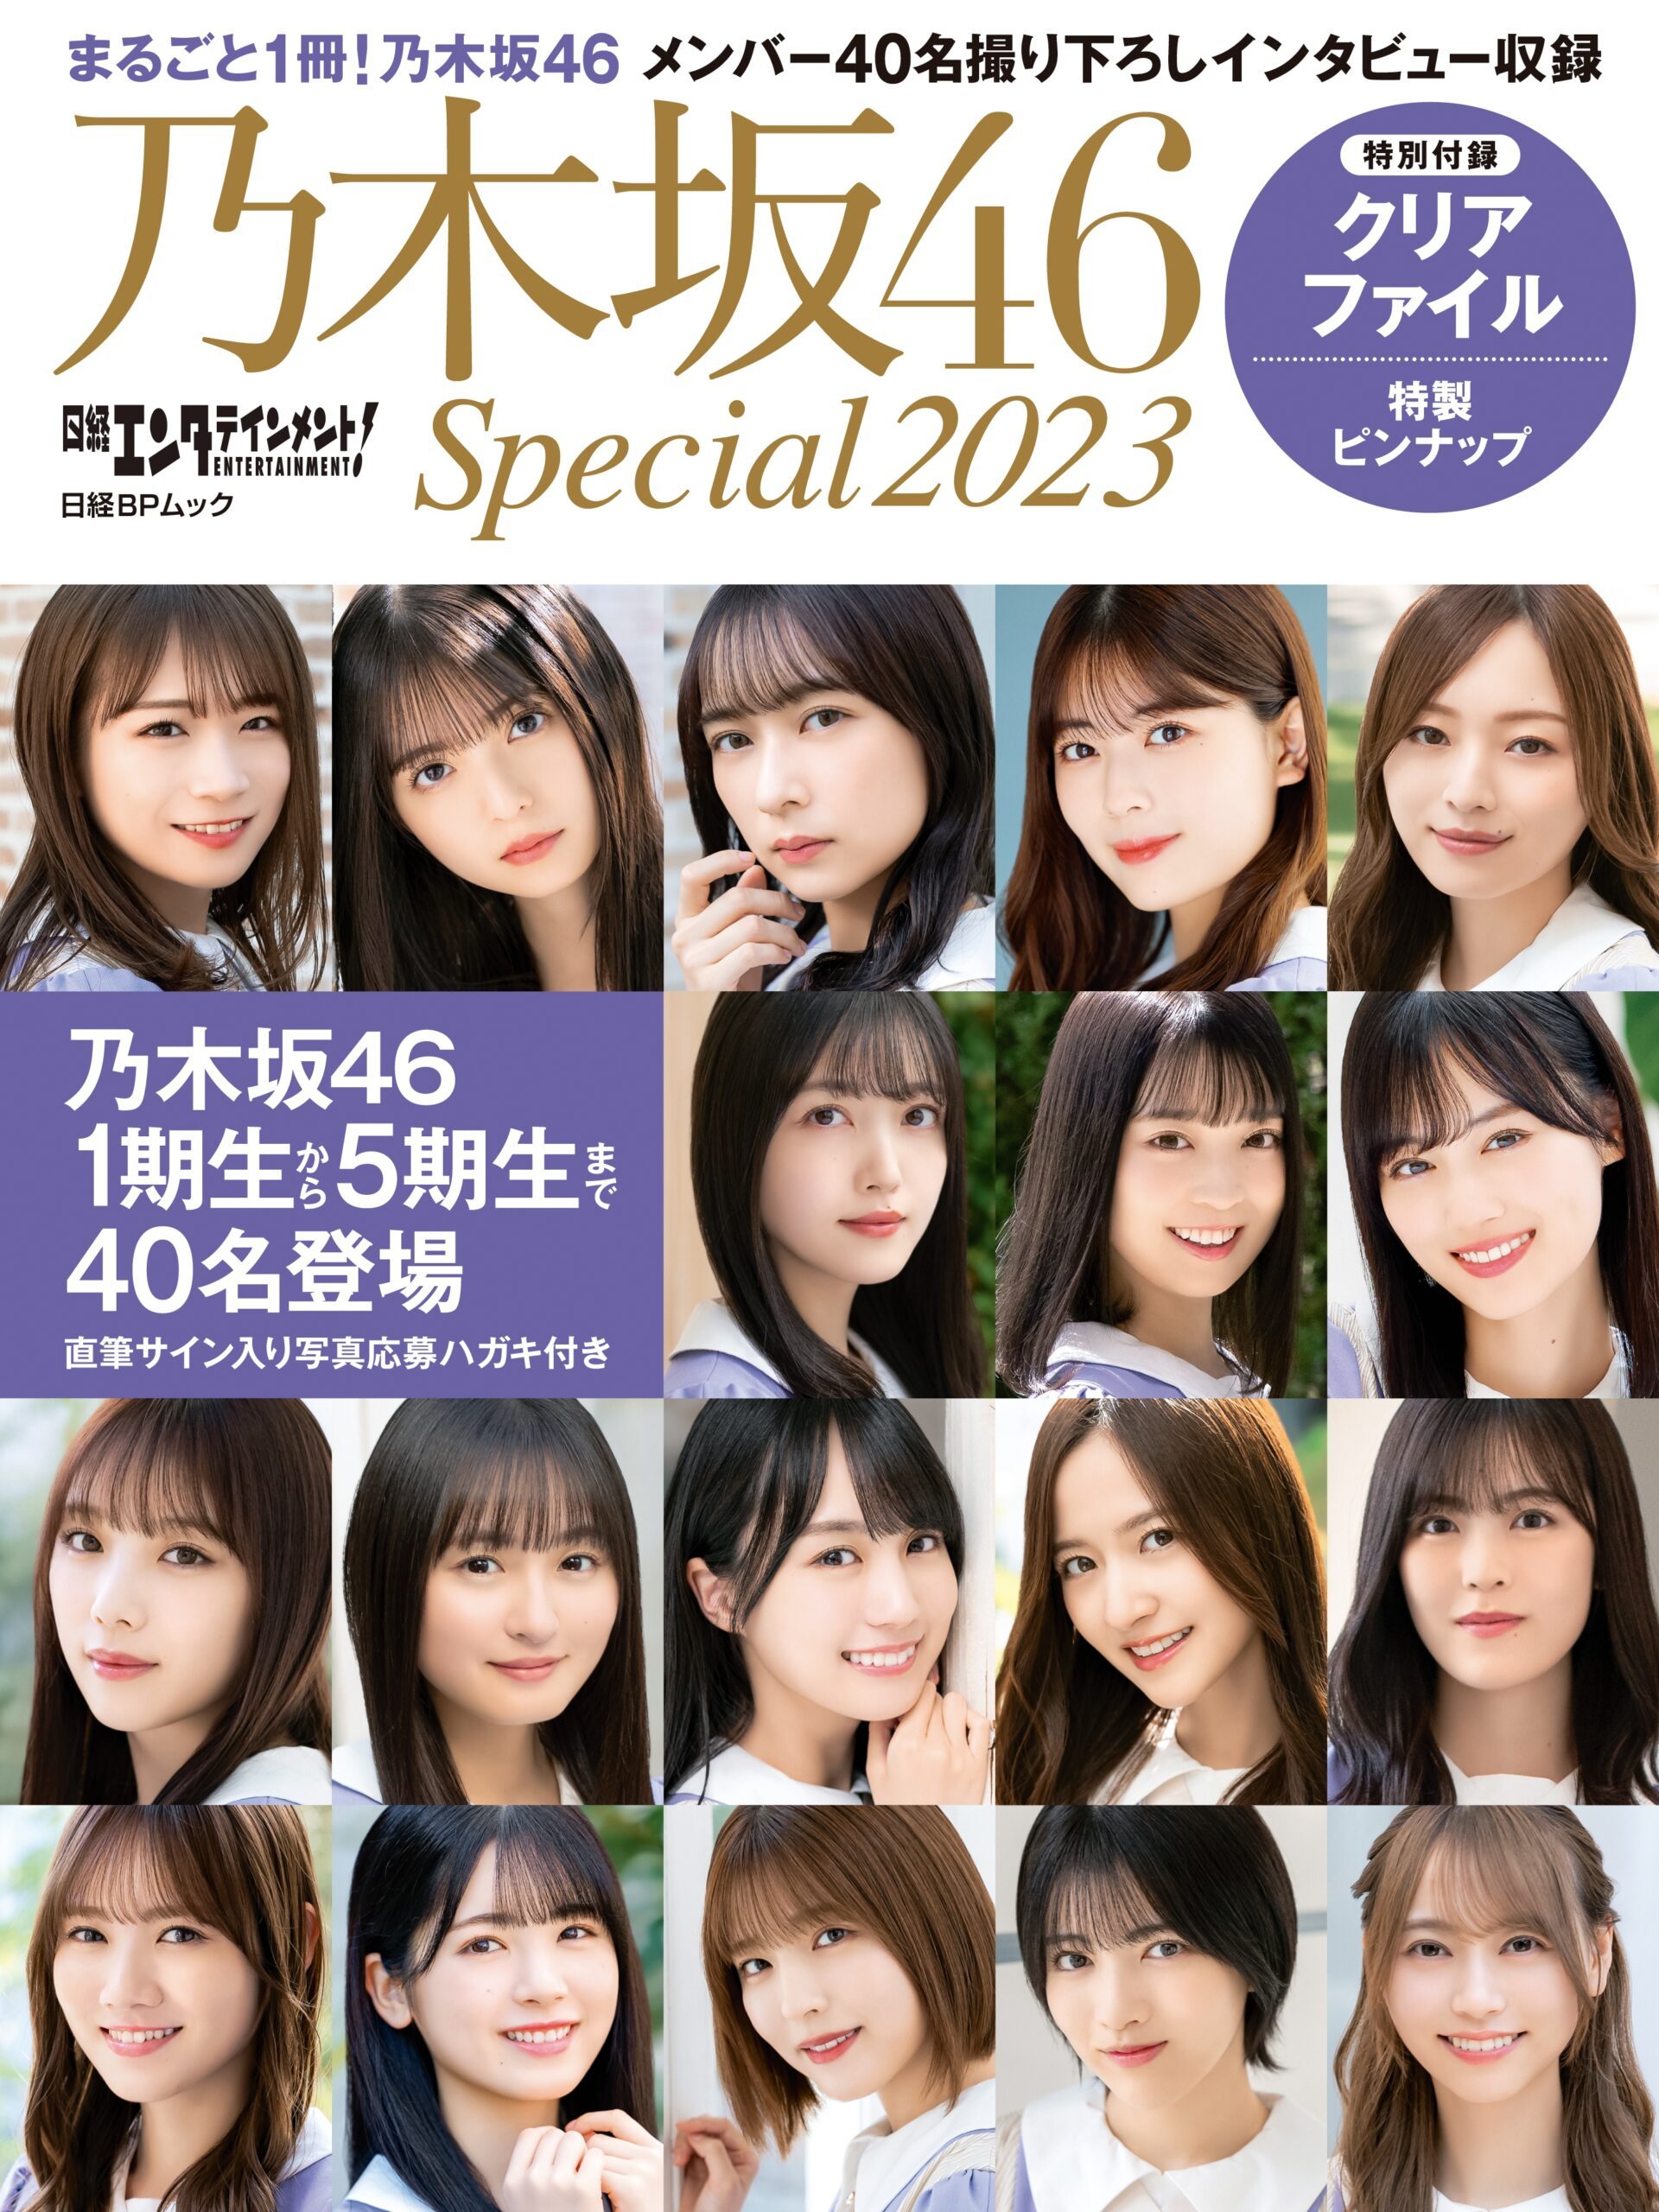 乃木坂46共40名成员登场杂志书『日経エンタテインメント！乃木坂46 Special 2023』下周发售 - itotii